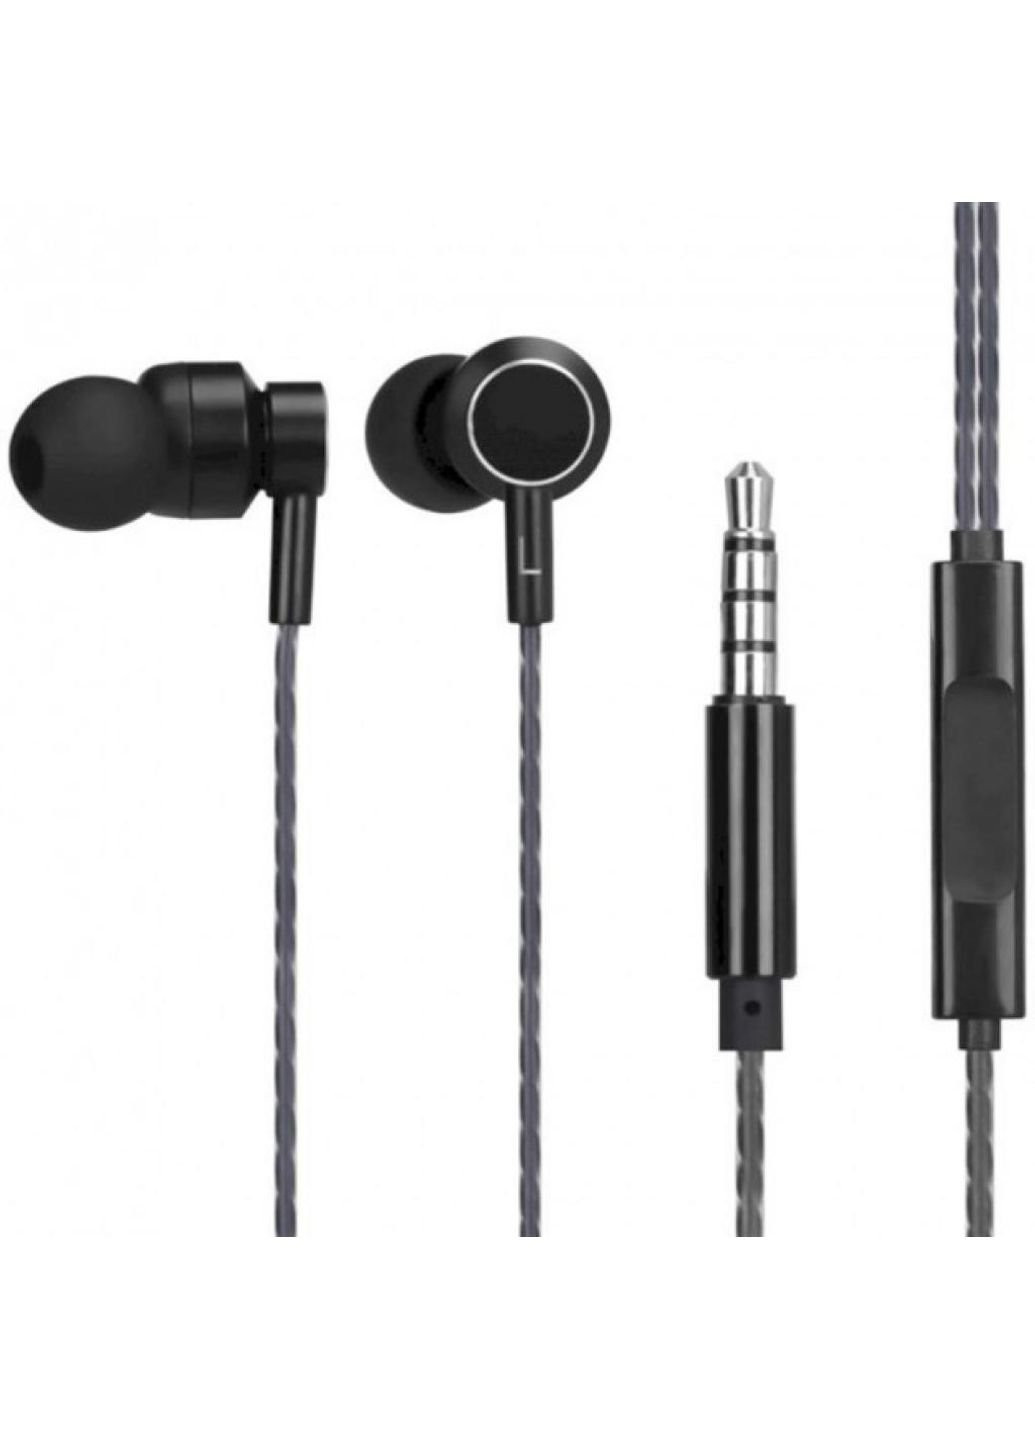 Навушники DHE-7001 Headset Black (DHE-7001) HP (250310906)